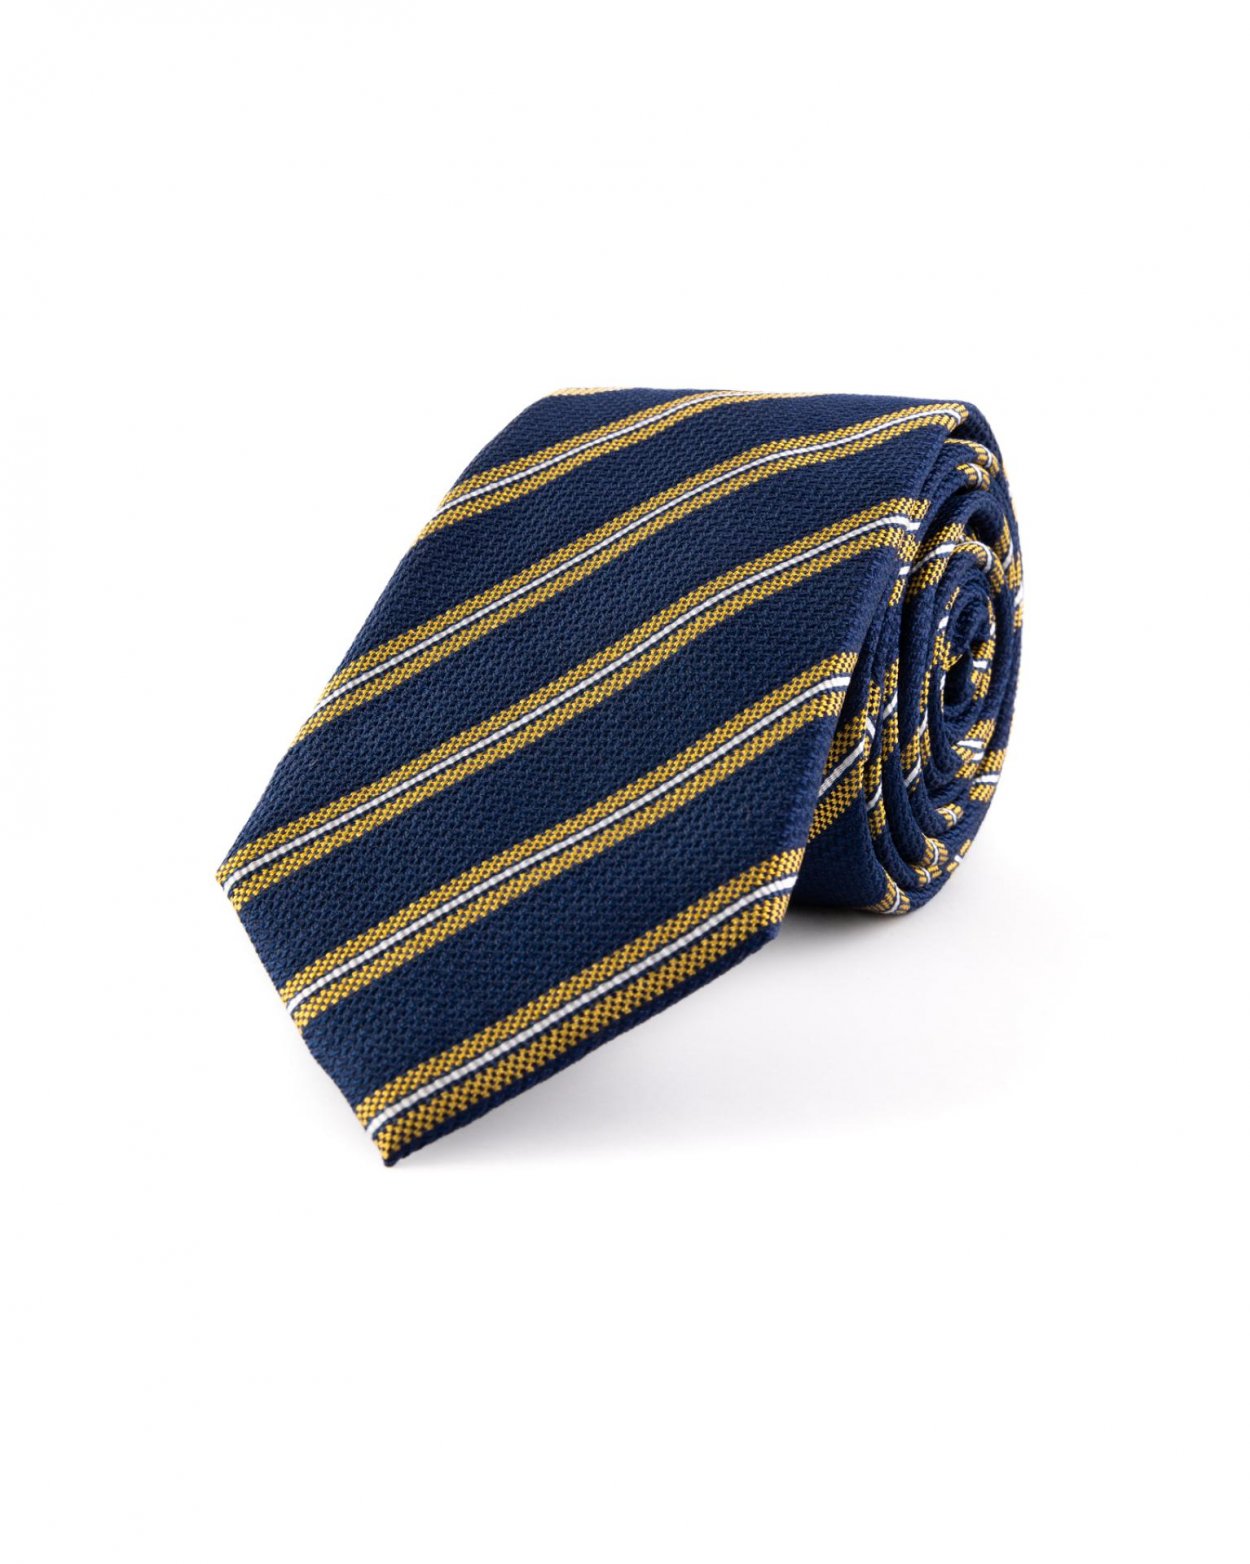 Tmavě modrá hedvábná kravata s proužkem